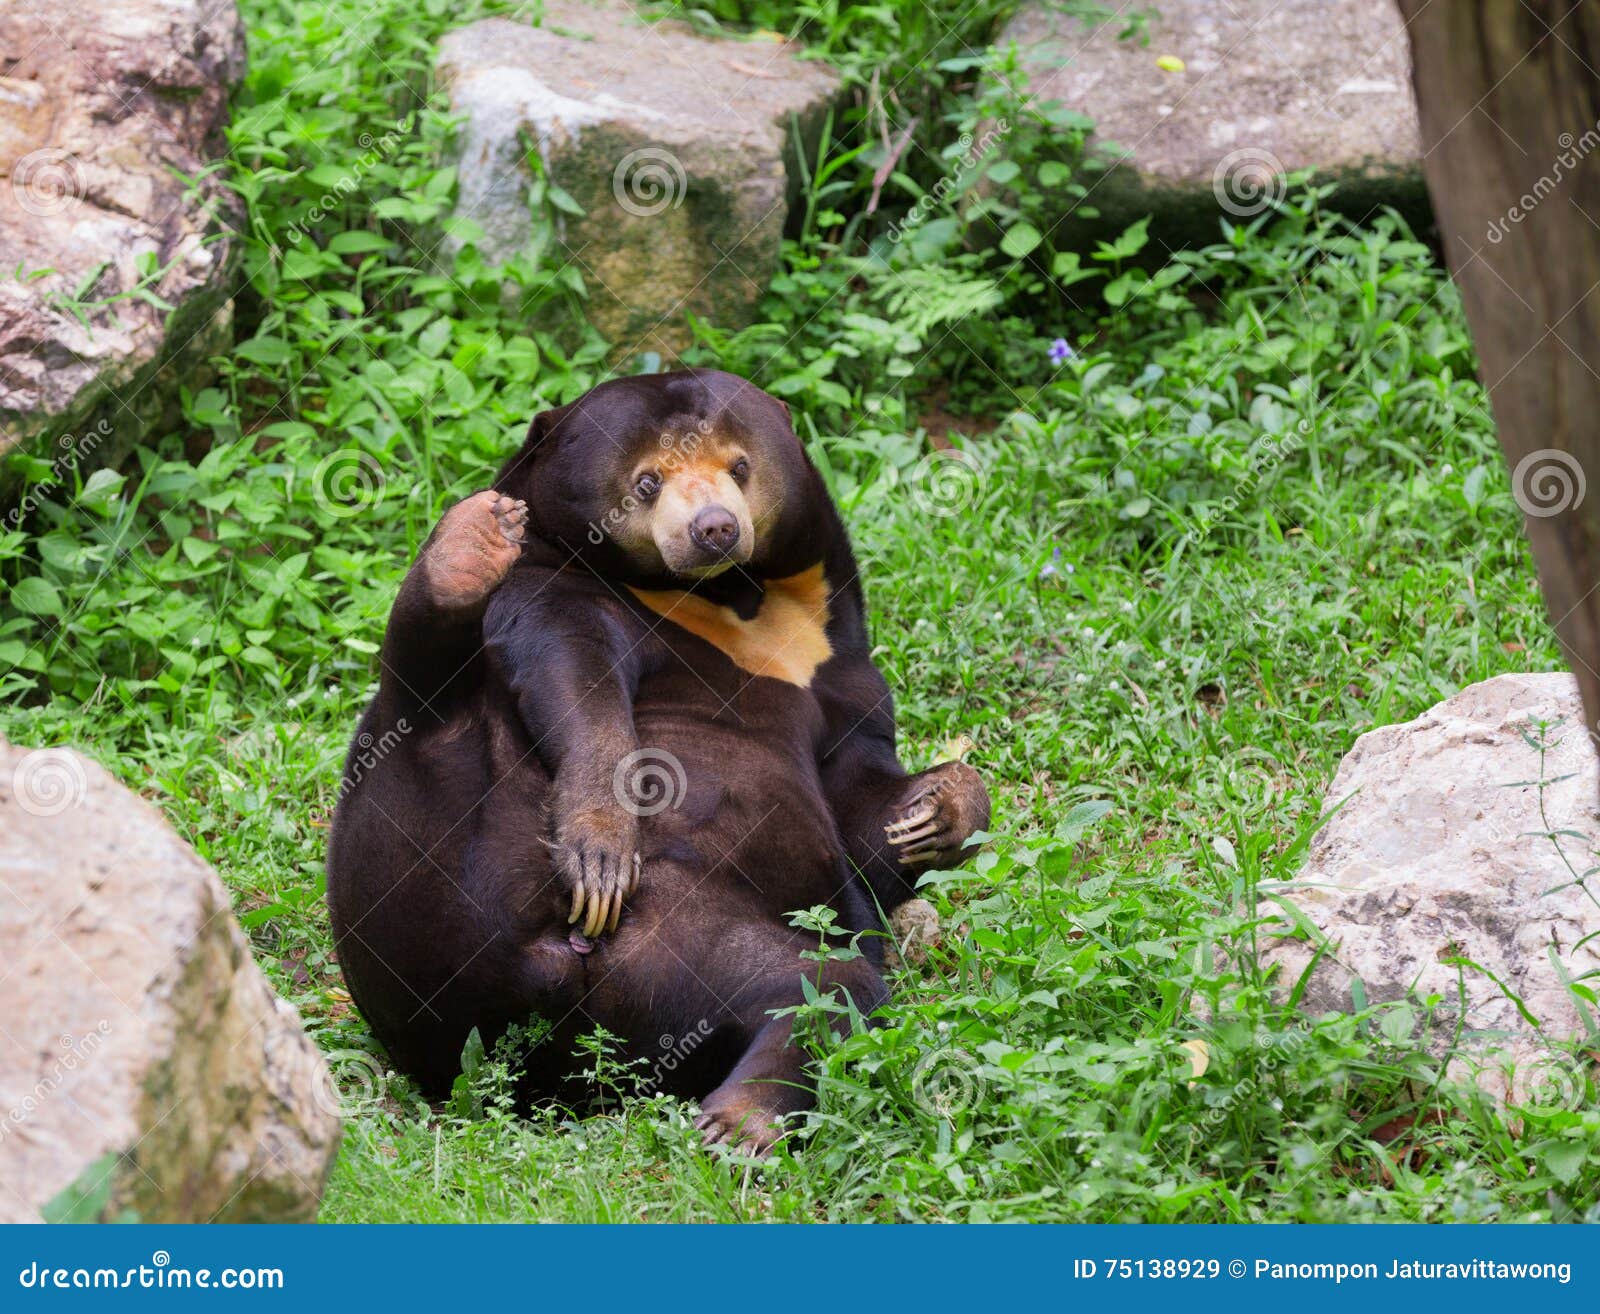 malayan sun bear or honey bear in mating season